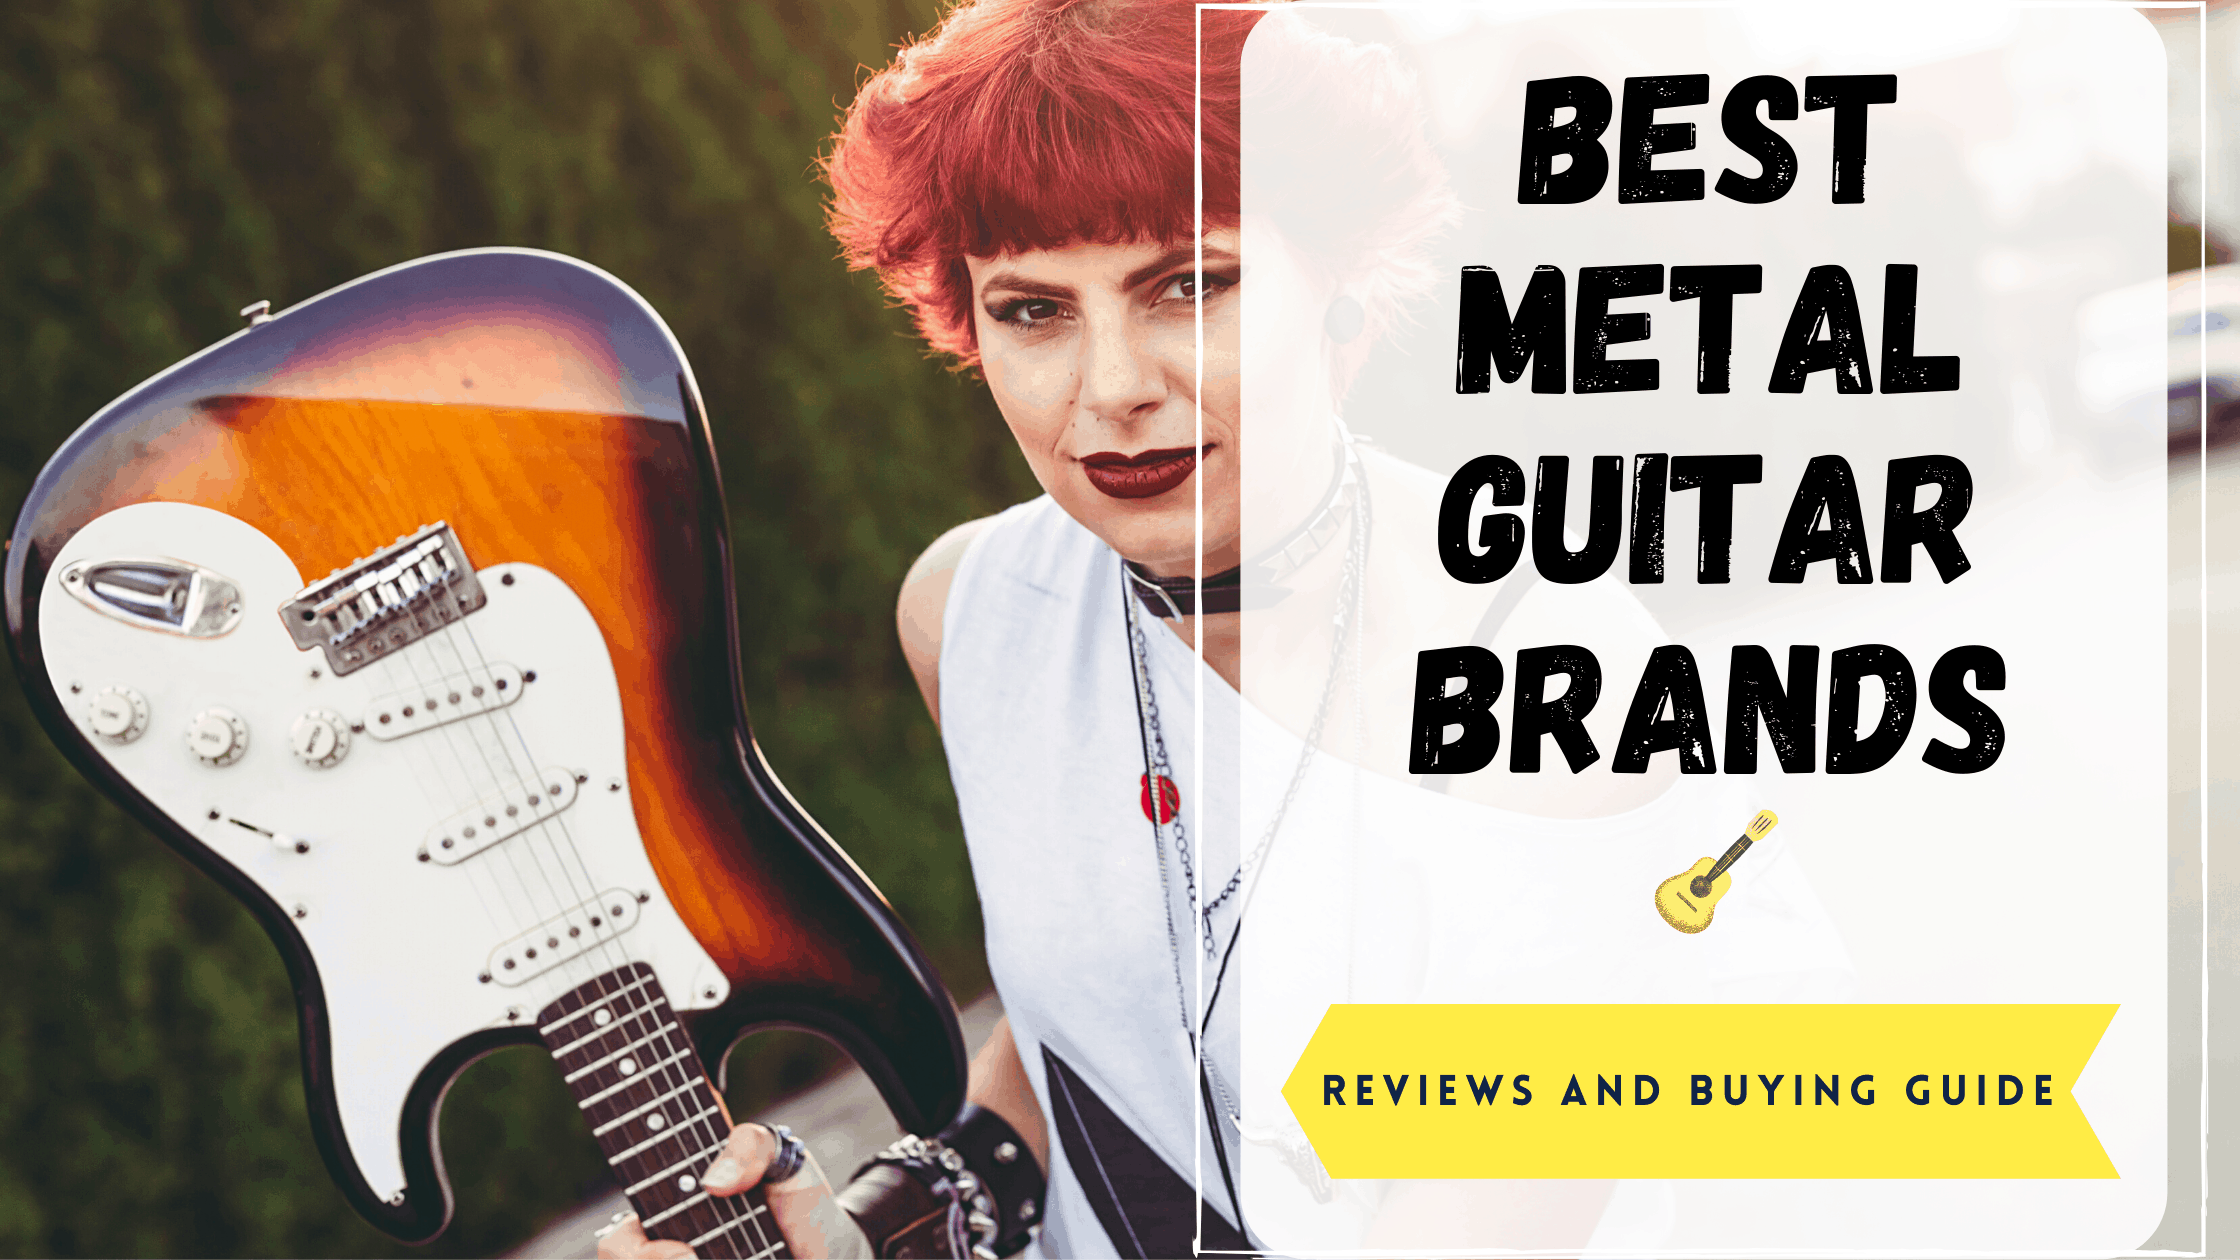 Best Metal Guitar Brands